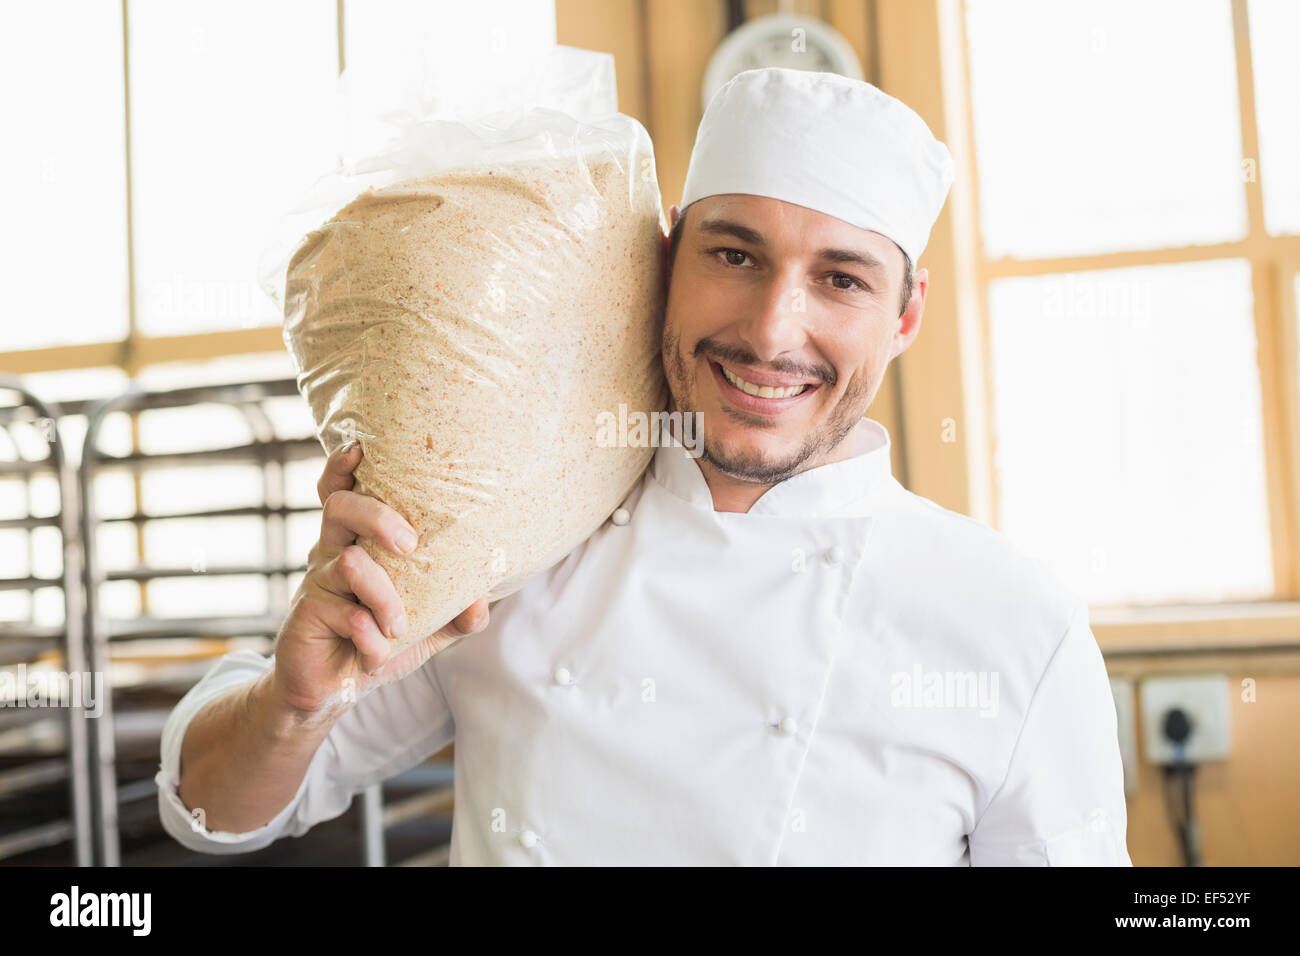 Smiling baker holding bag of rising dough Stock Photo